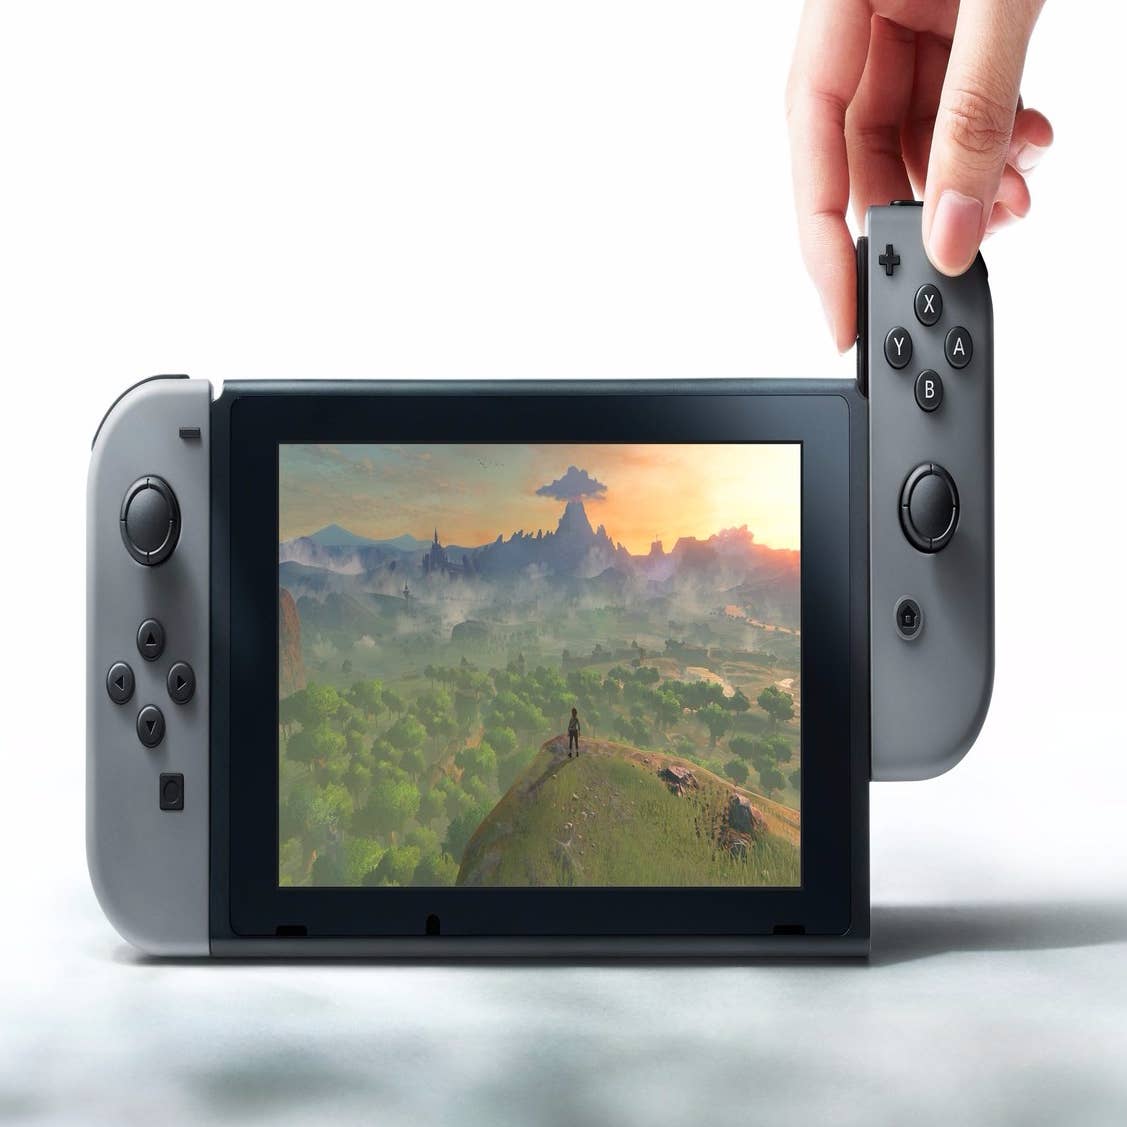 Primeiras ROMs de jogos de Nintendo Switch começam a aparecer na